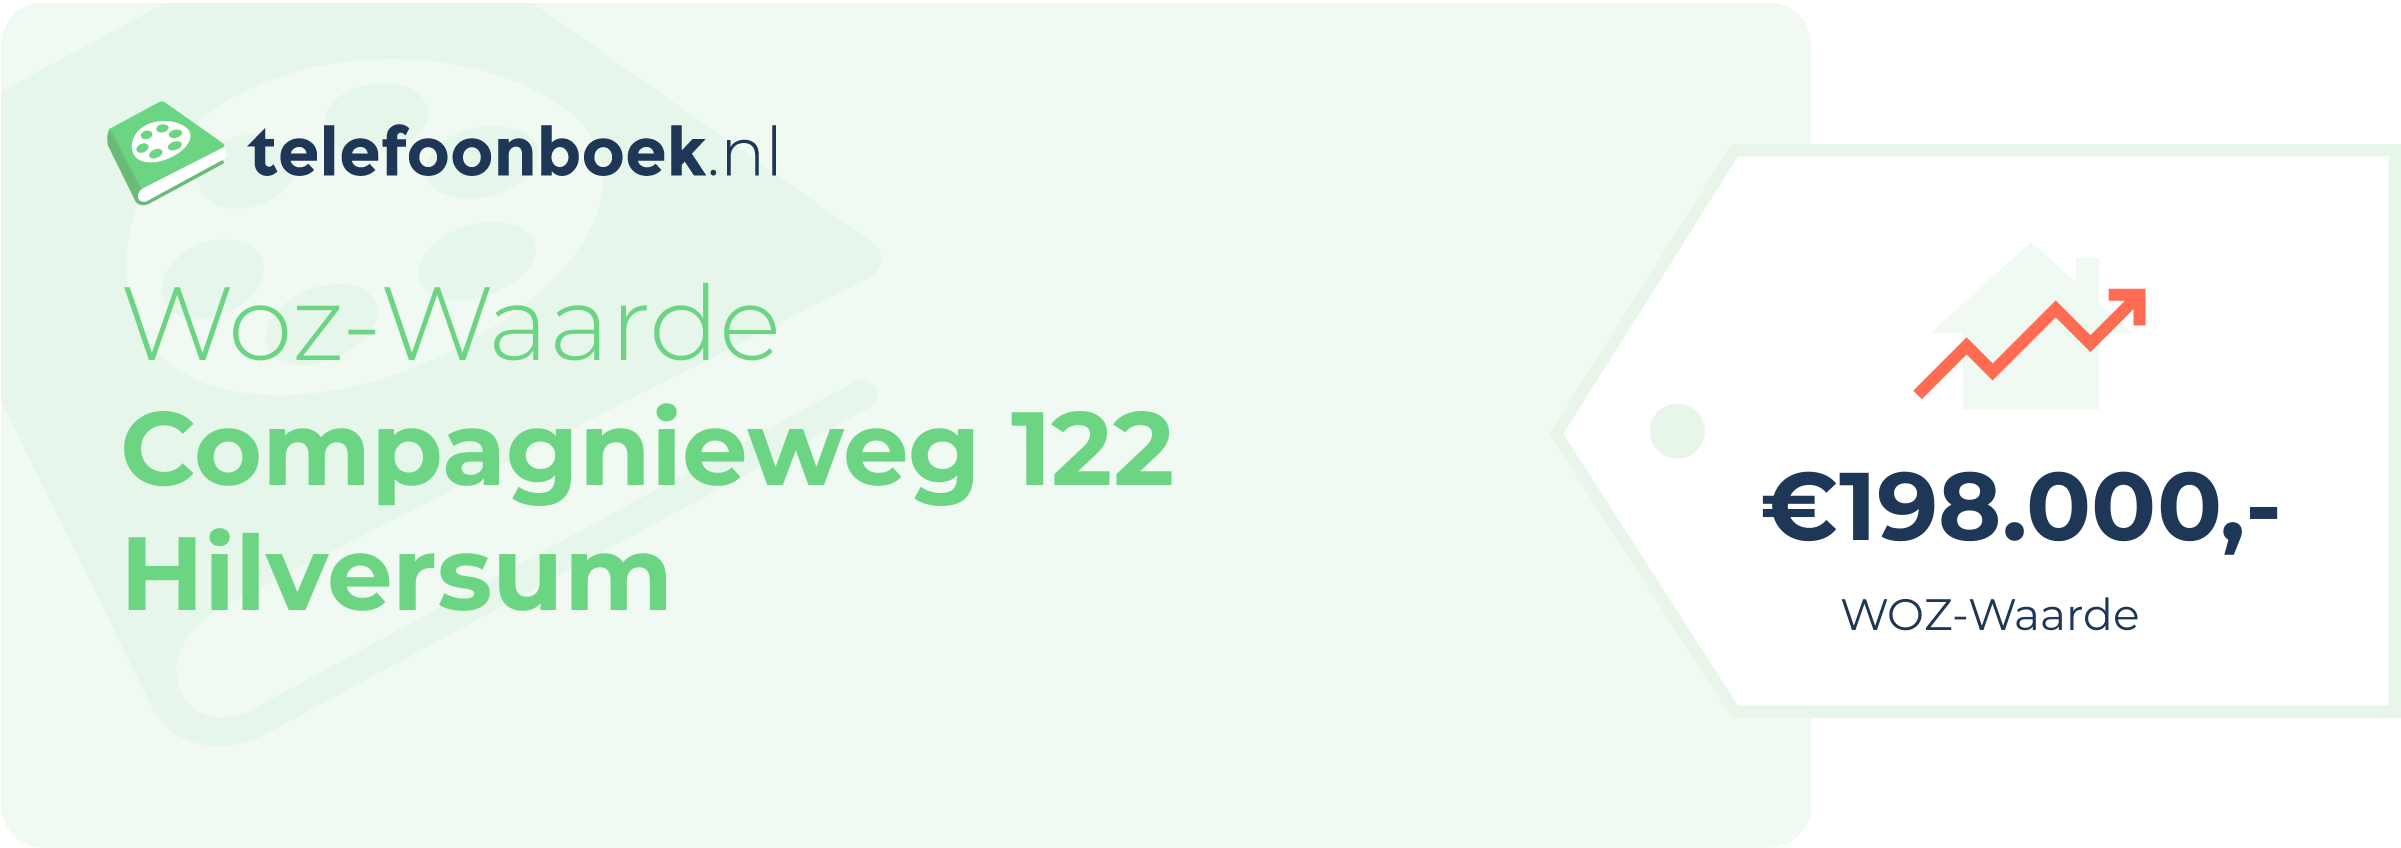 WOZ-waarde Compagnieweg 122 Hilversum